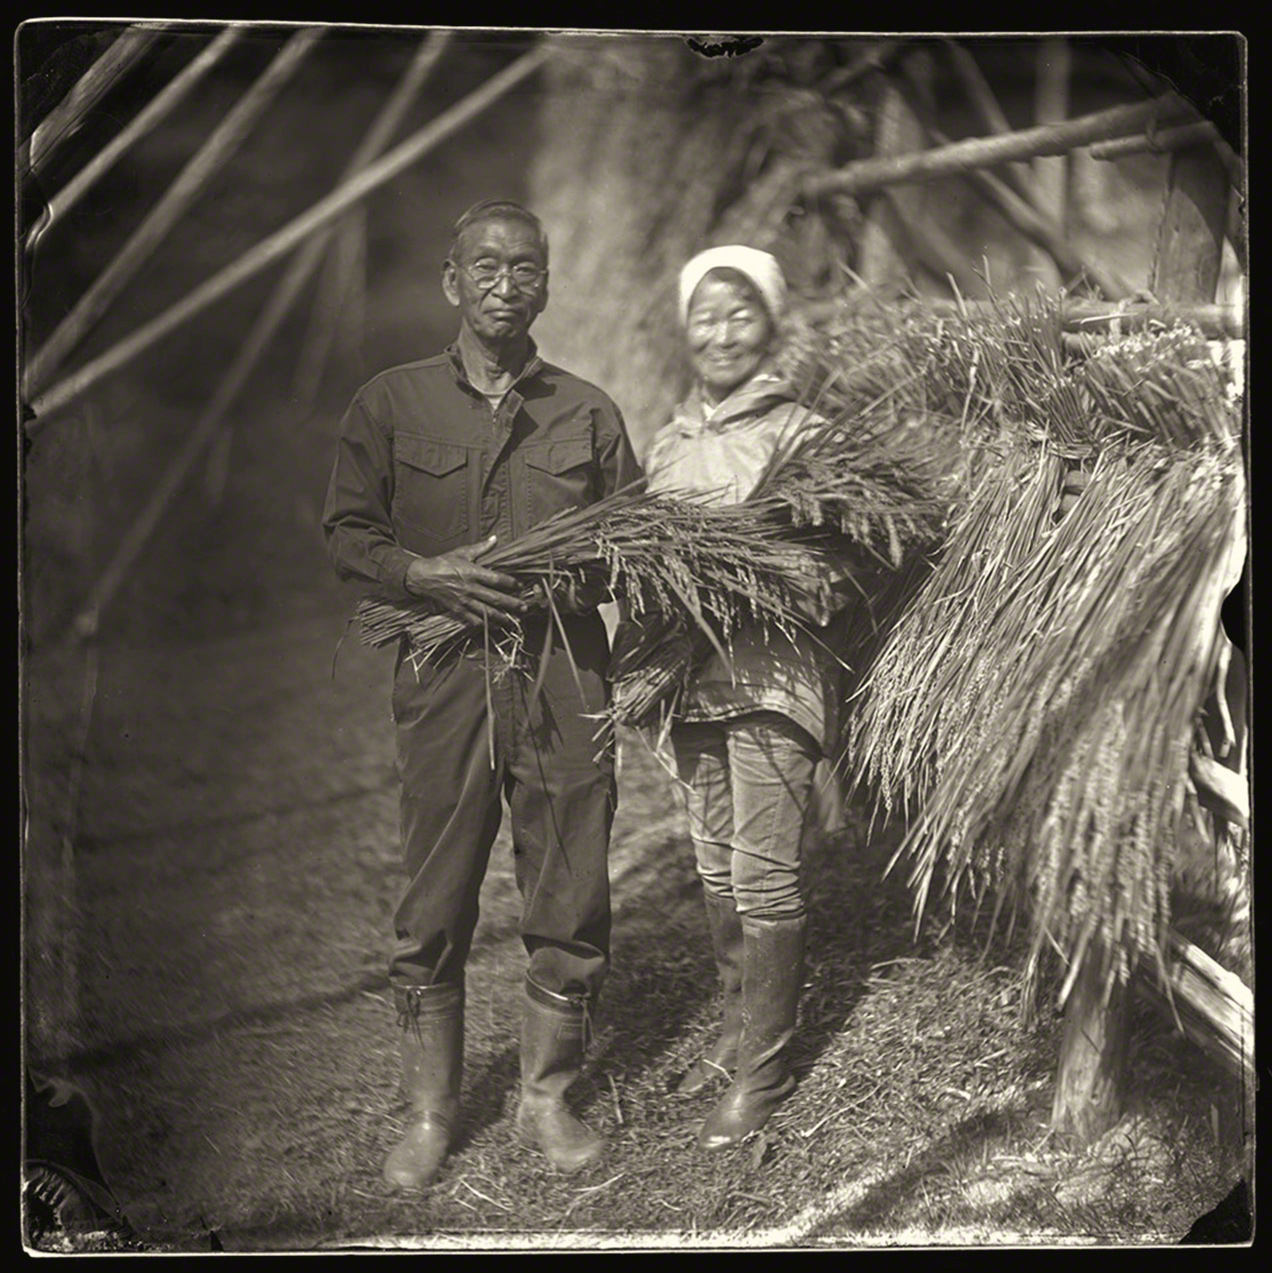 生活在出雲的農民夫婦在收割祖祖輩輩傳下來的有機稻米